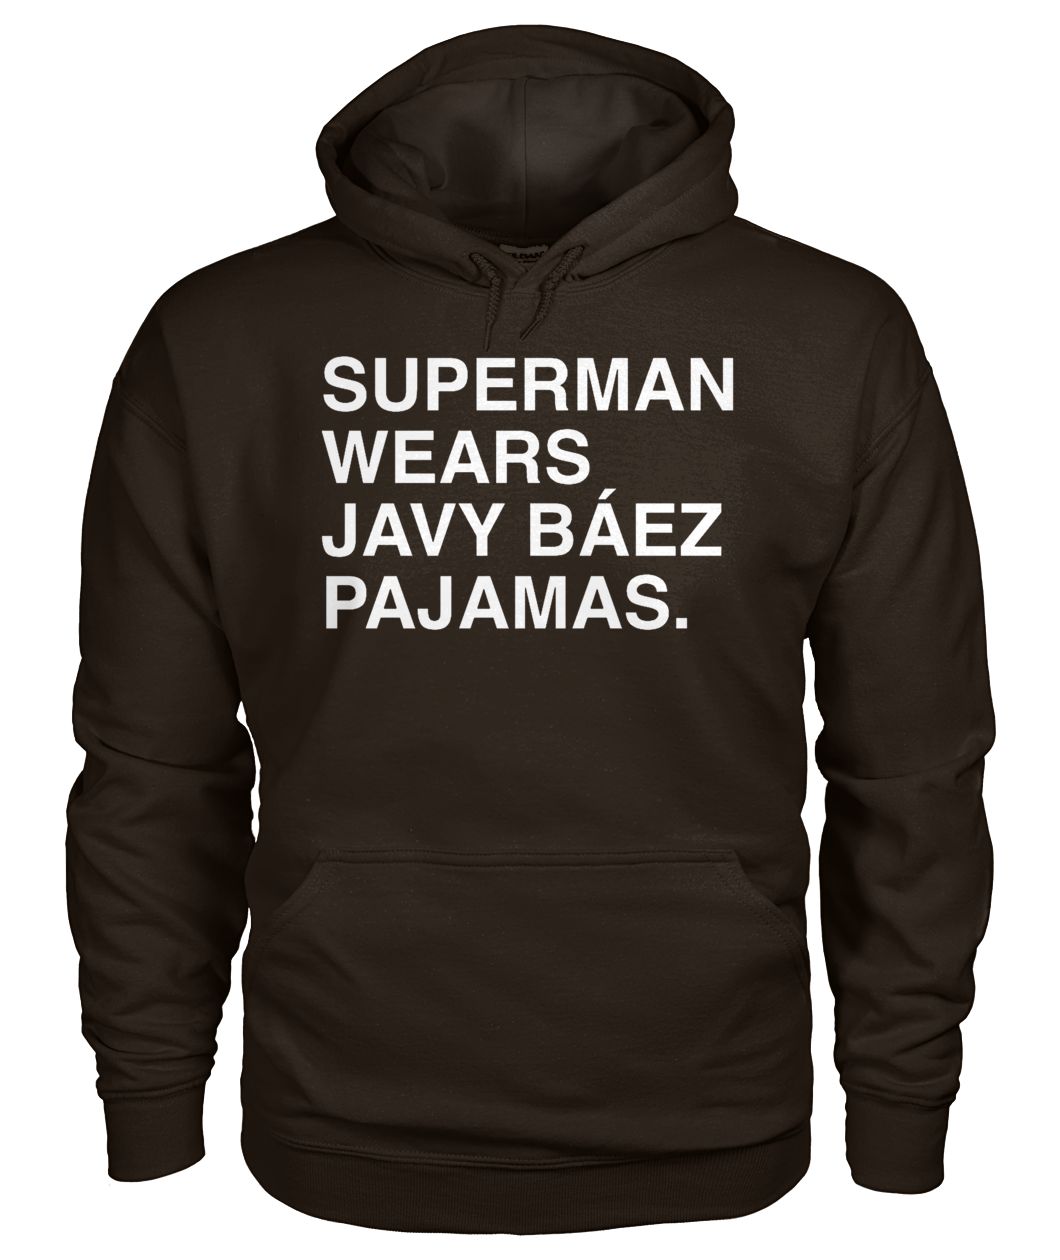 Superman wears javy baez pajamas gildan hoodie